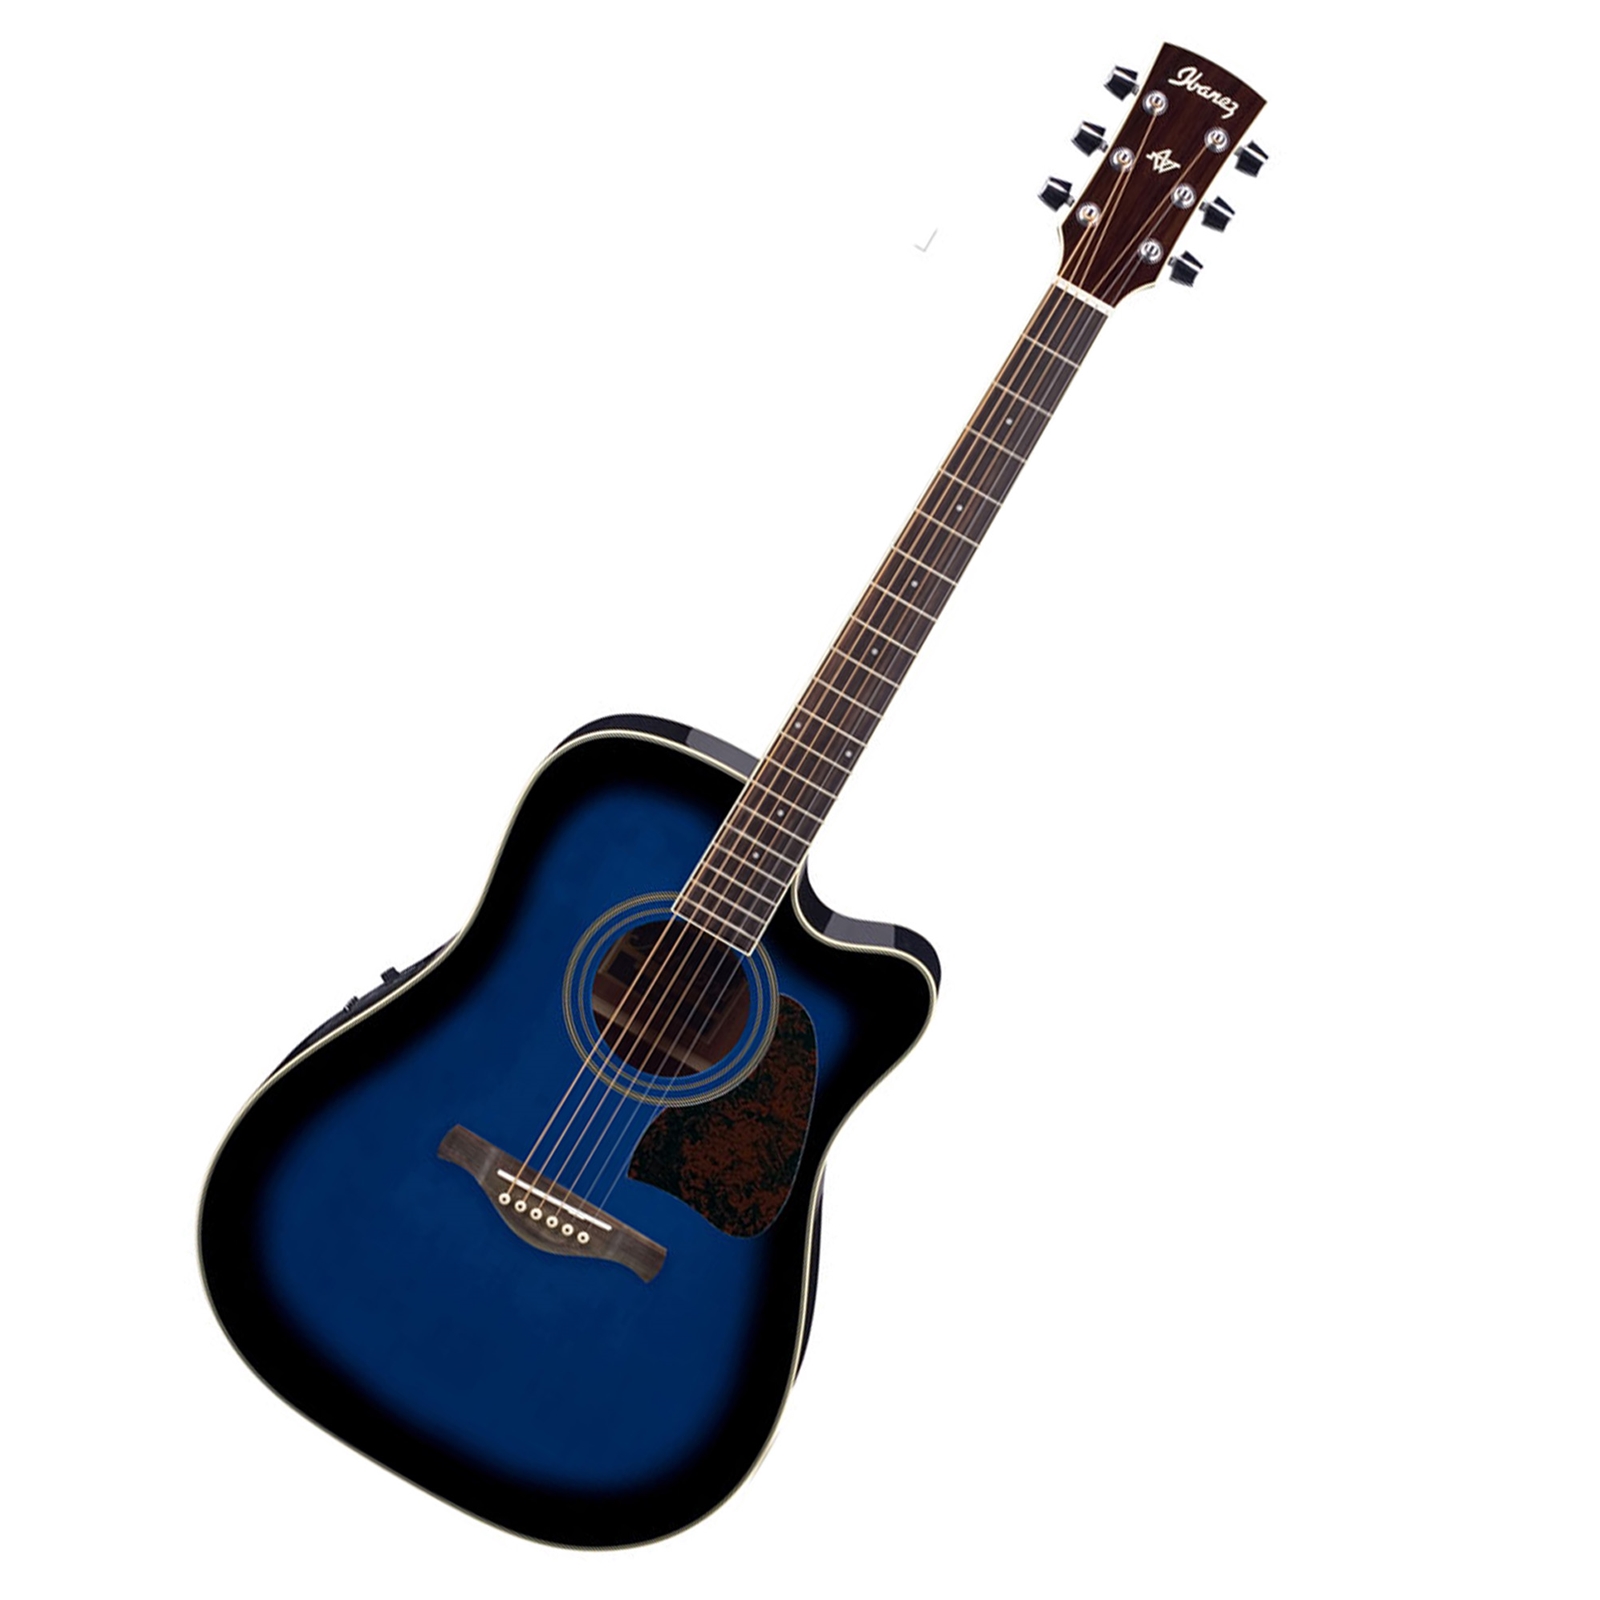 Ibanez AW70ECE Artwood Series Acoustic-Electric Guitar - Transparent Blue Sunburst